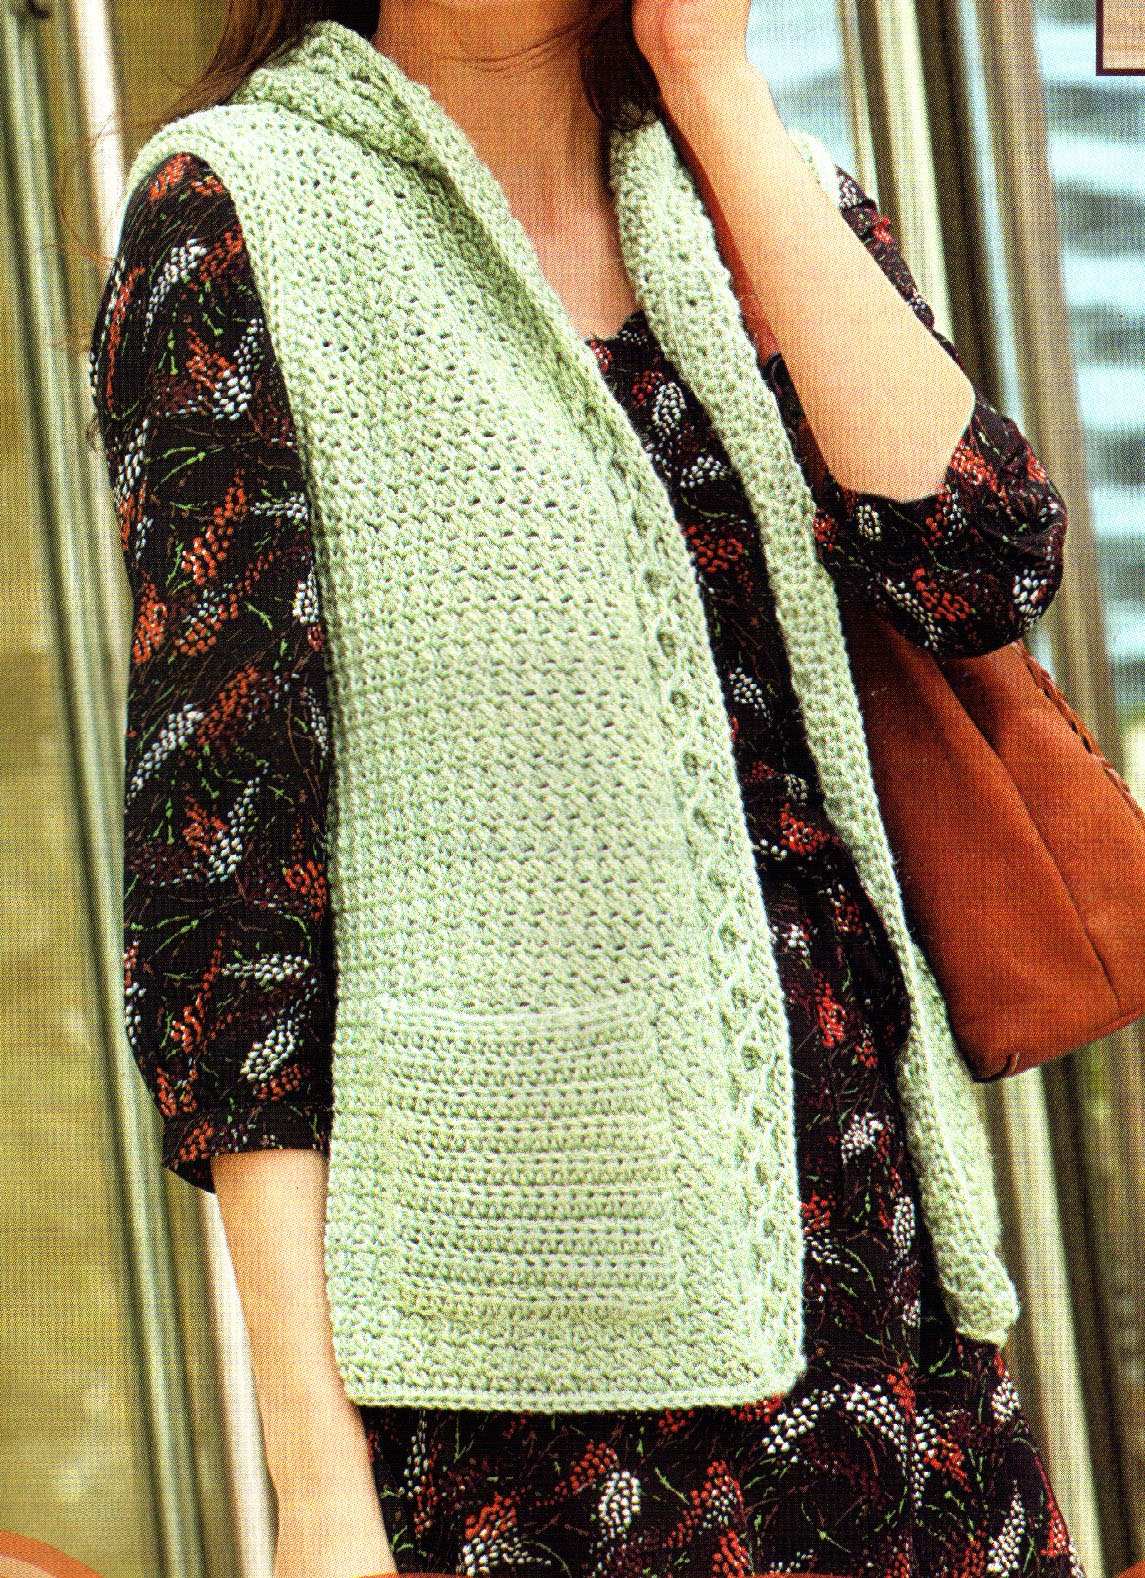 tejidos artesanales en crochet: chaleco tejido en crochet con trenzas